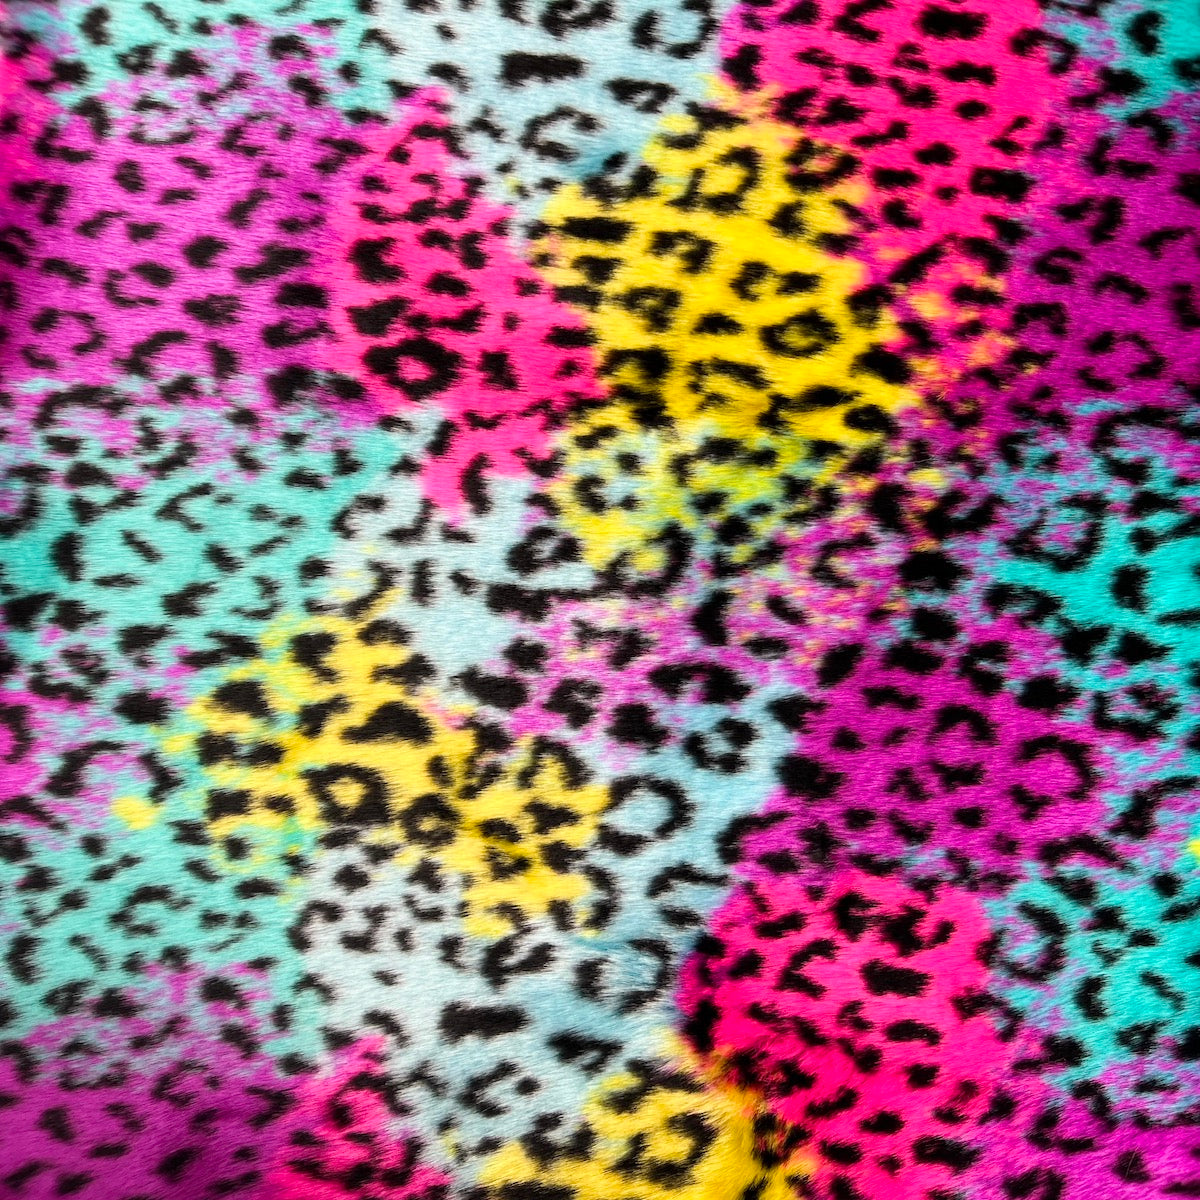 Beige Leopard Motif Wallpaper in Caramel